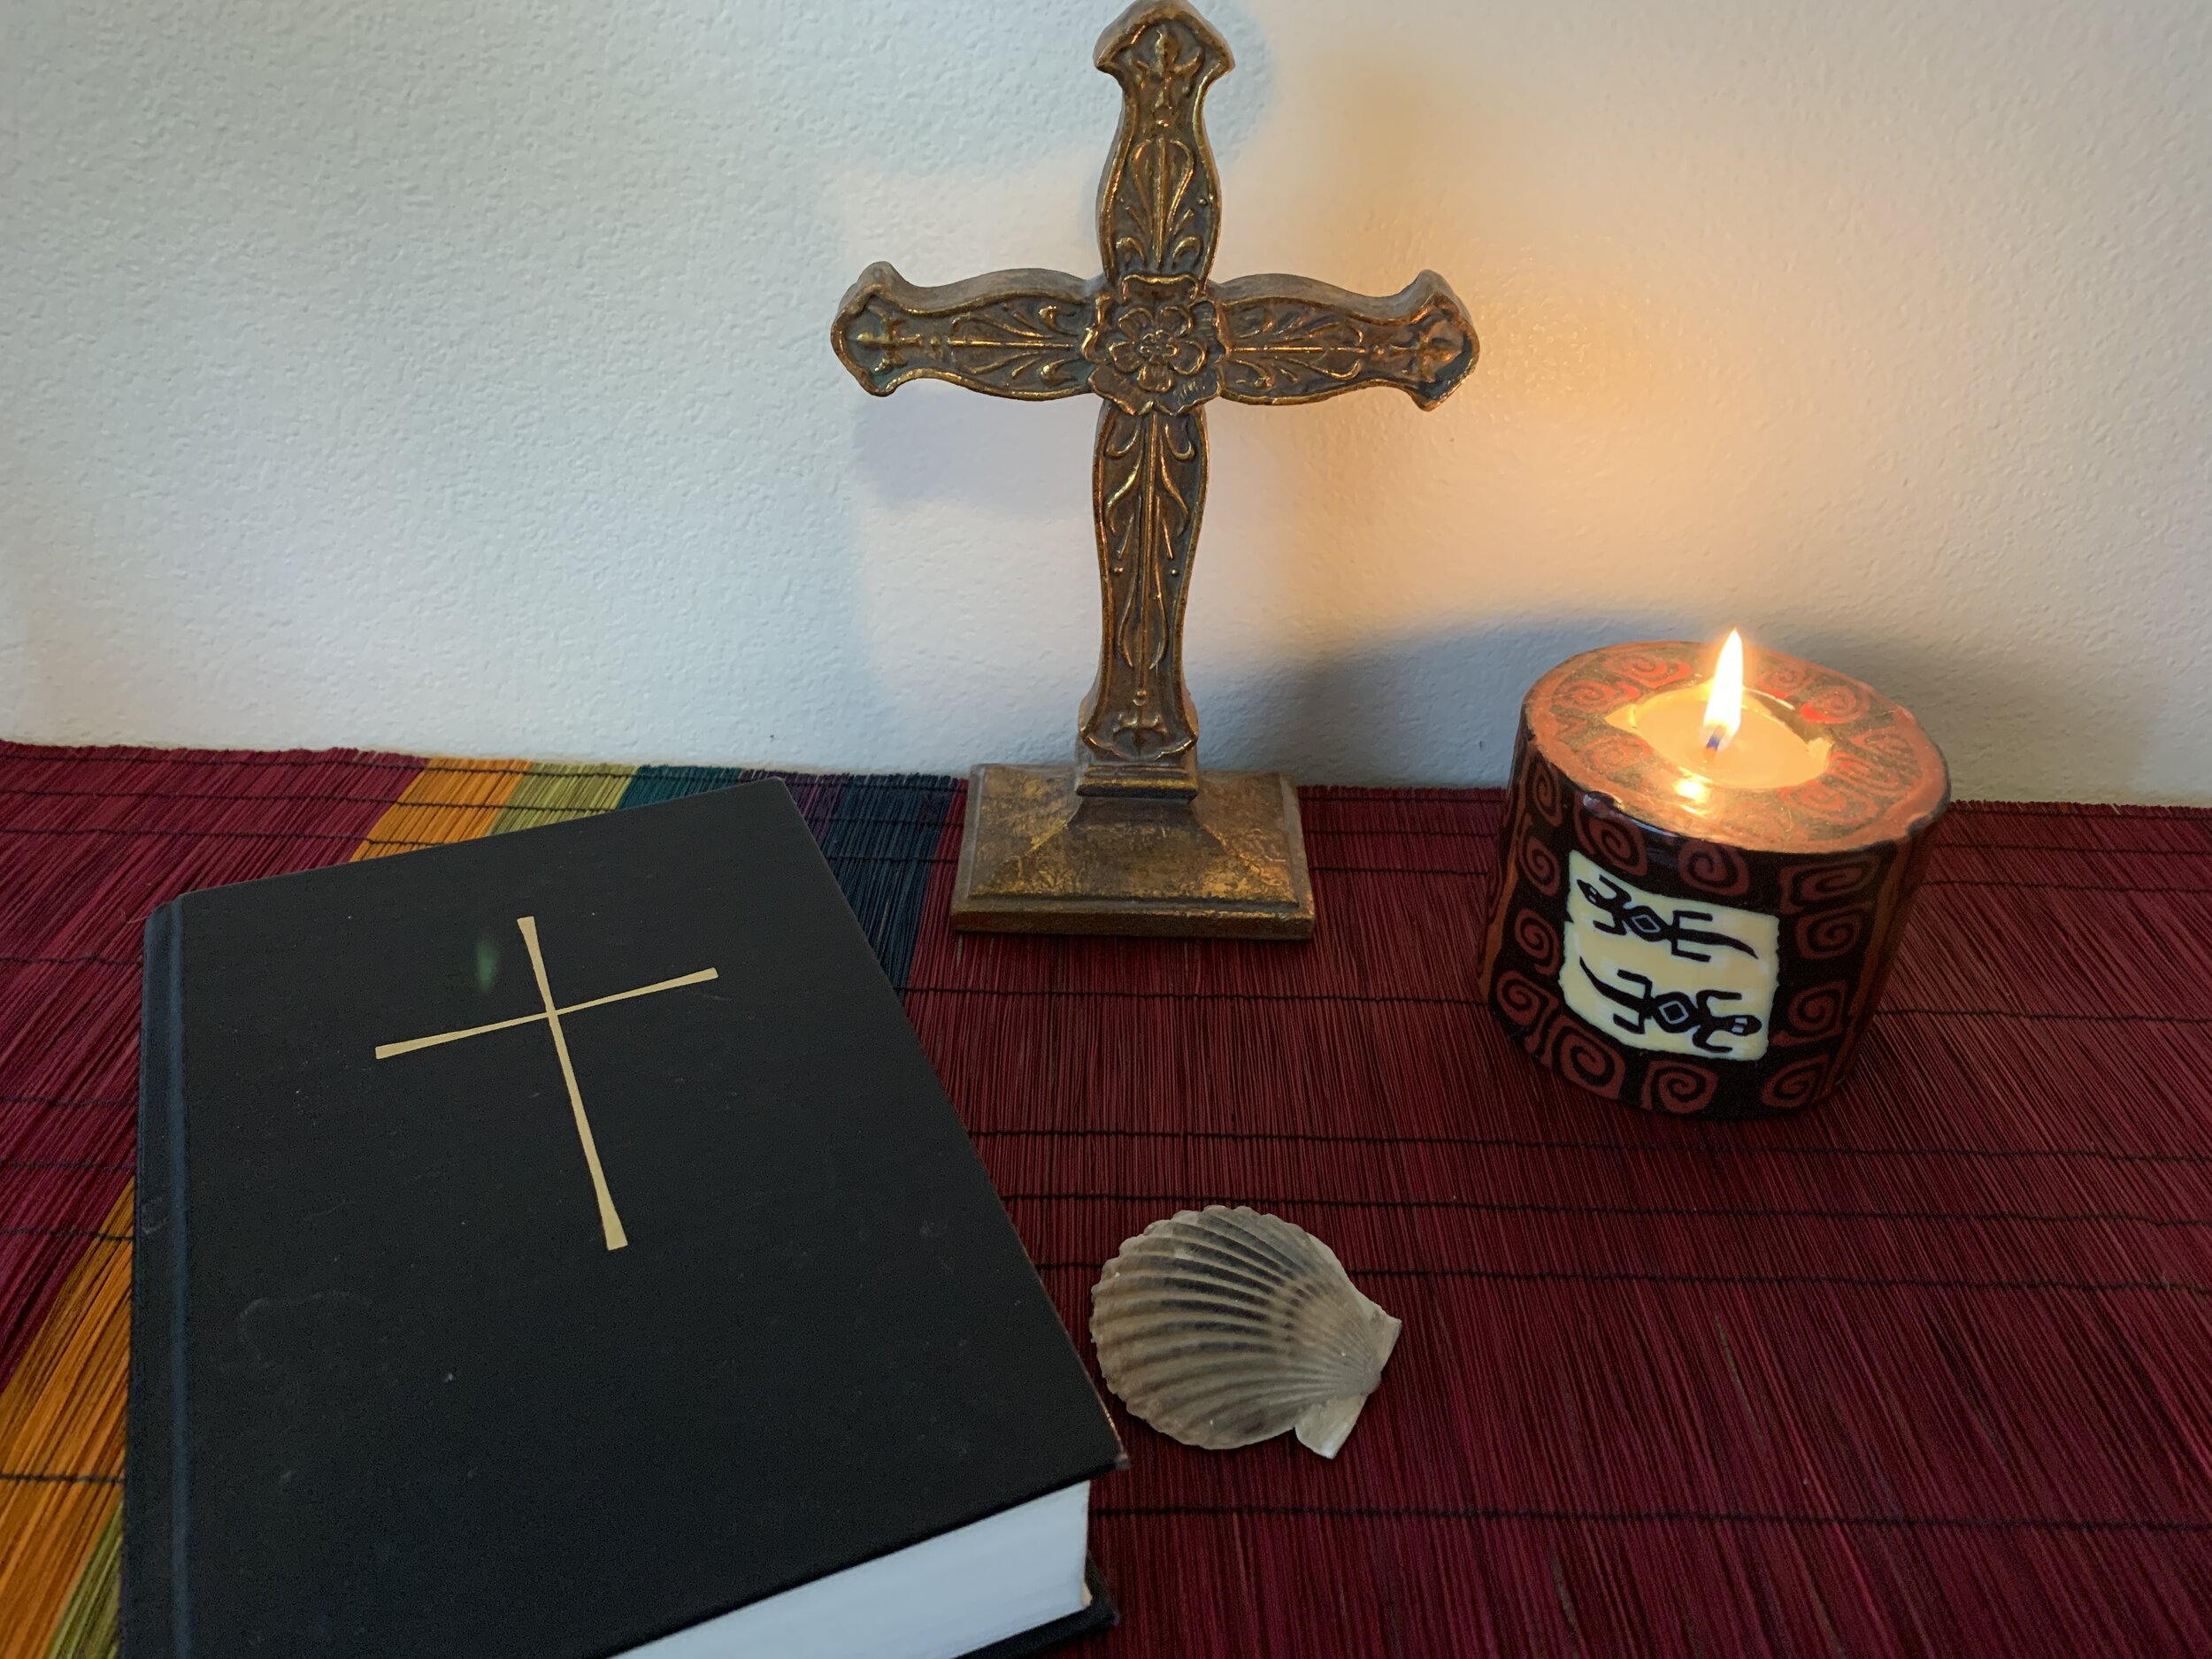 Home altar